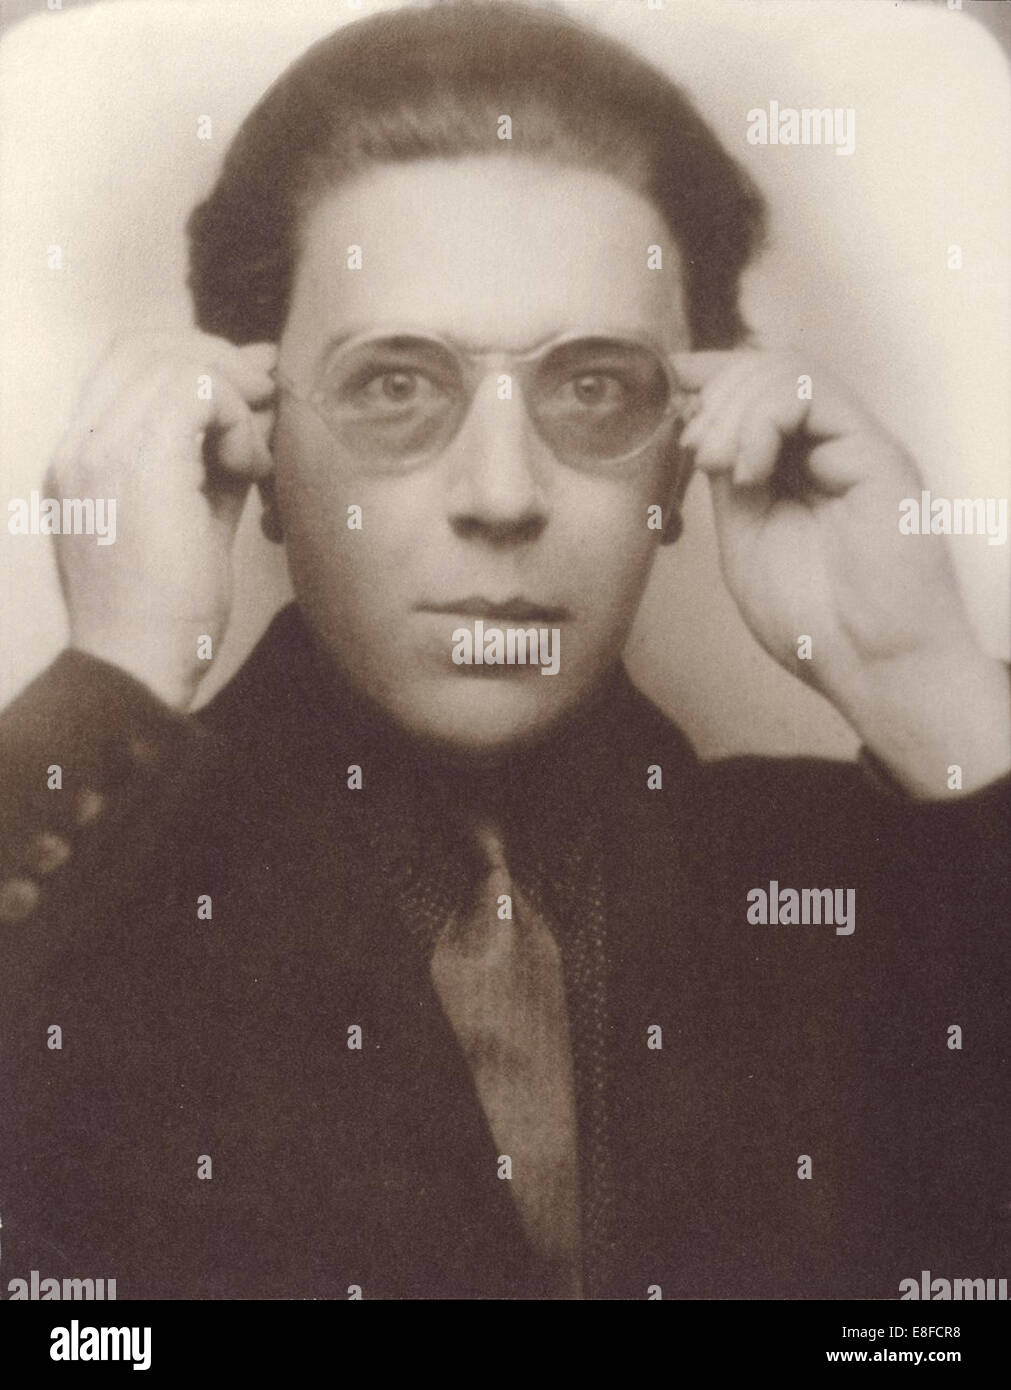 André Breton mit Brille. Künstler: anonym Stockfoto